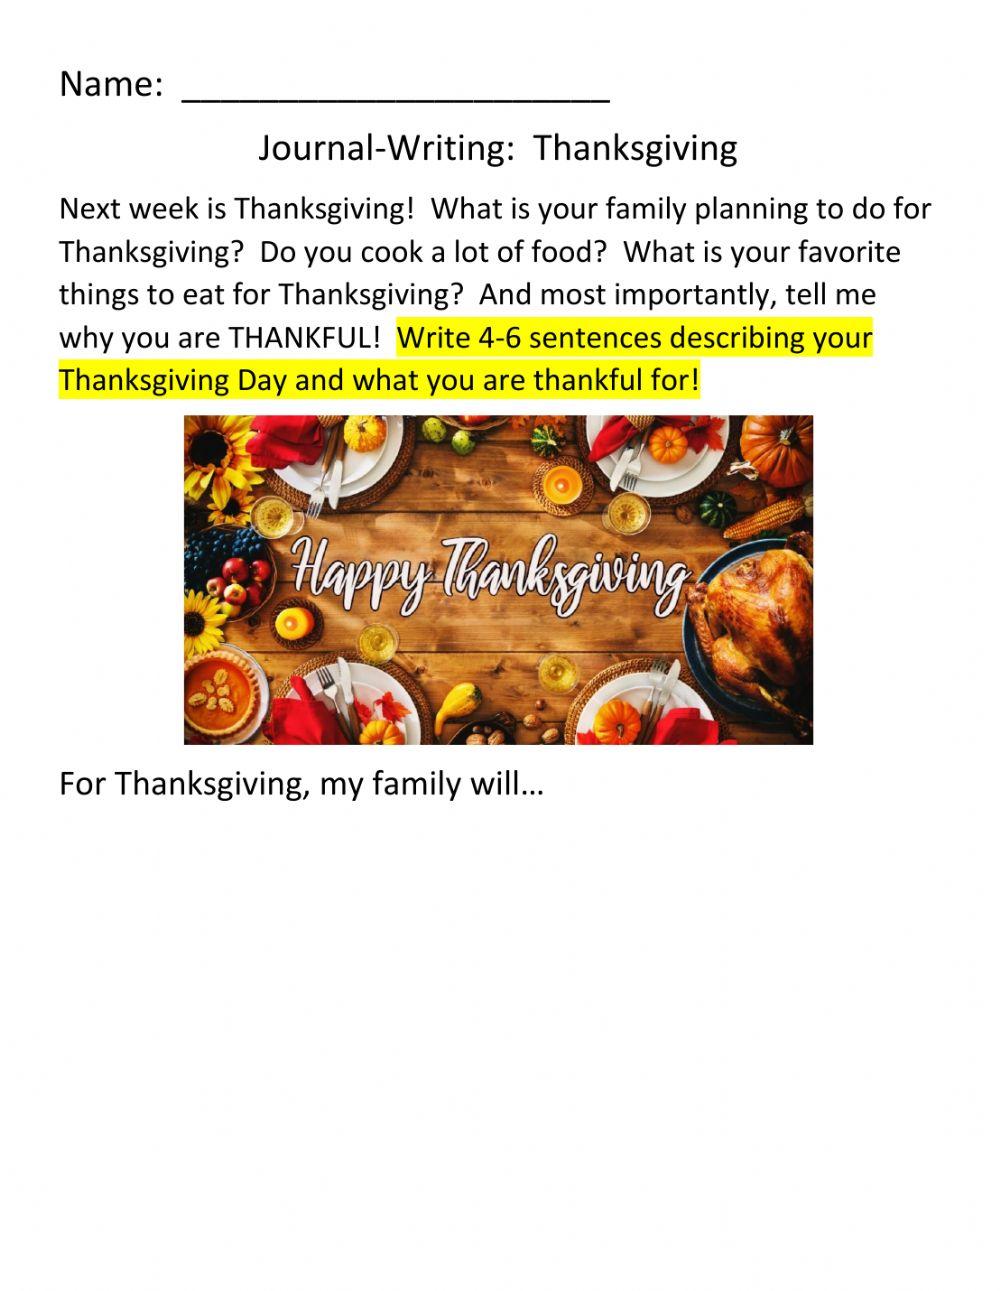 JOURNAL-WRITING:  Thanksgiving